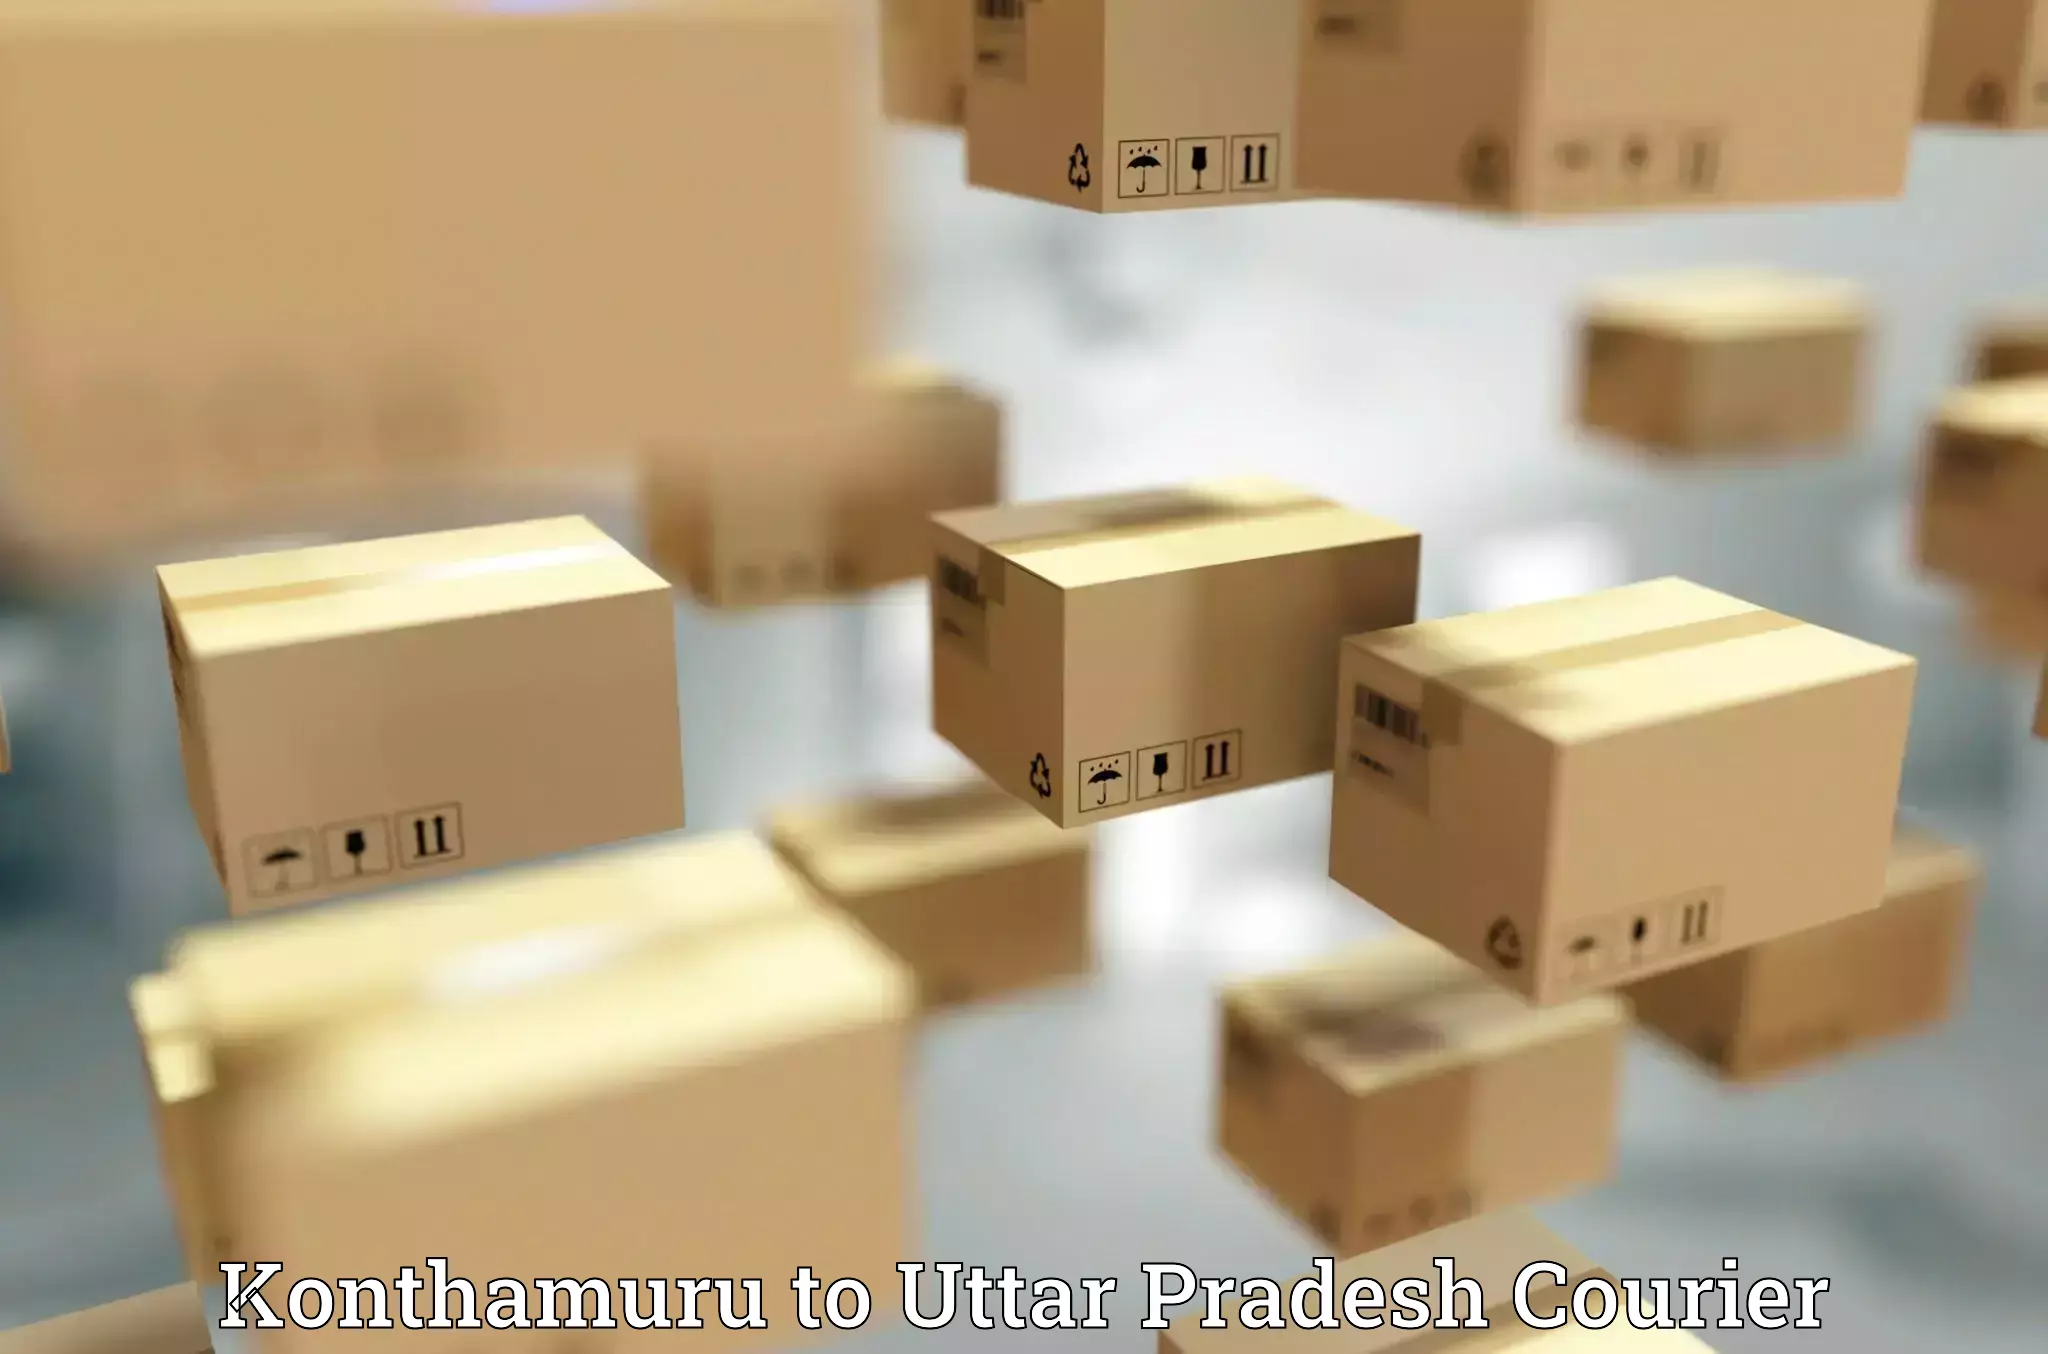 Efficient parcel tracking in Konthamuru to Mathura